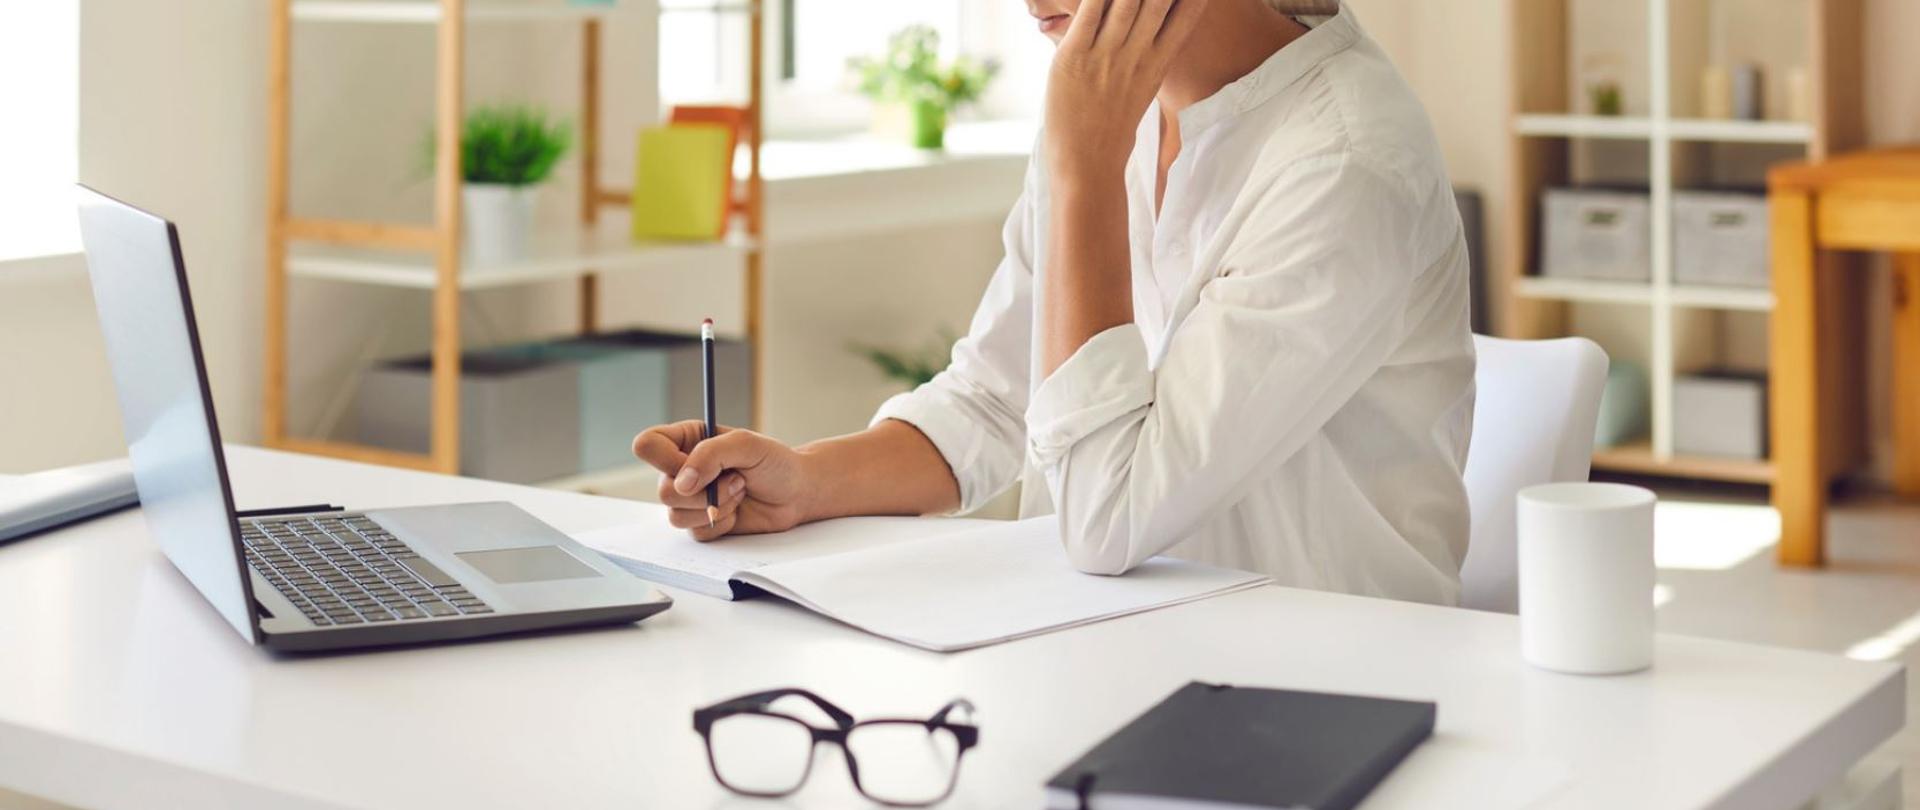 Kobieta w białej koszuli przy białym biurku, patrzy na otwarty laptop, zapisuje ołówkiem notatki w zeszycie, obok leżą okulary i biały kubek.